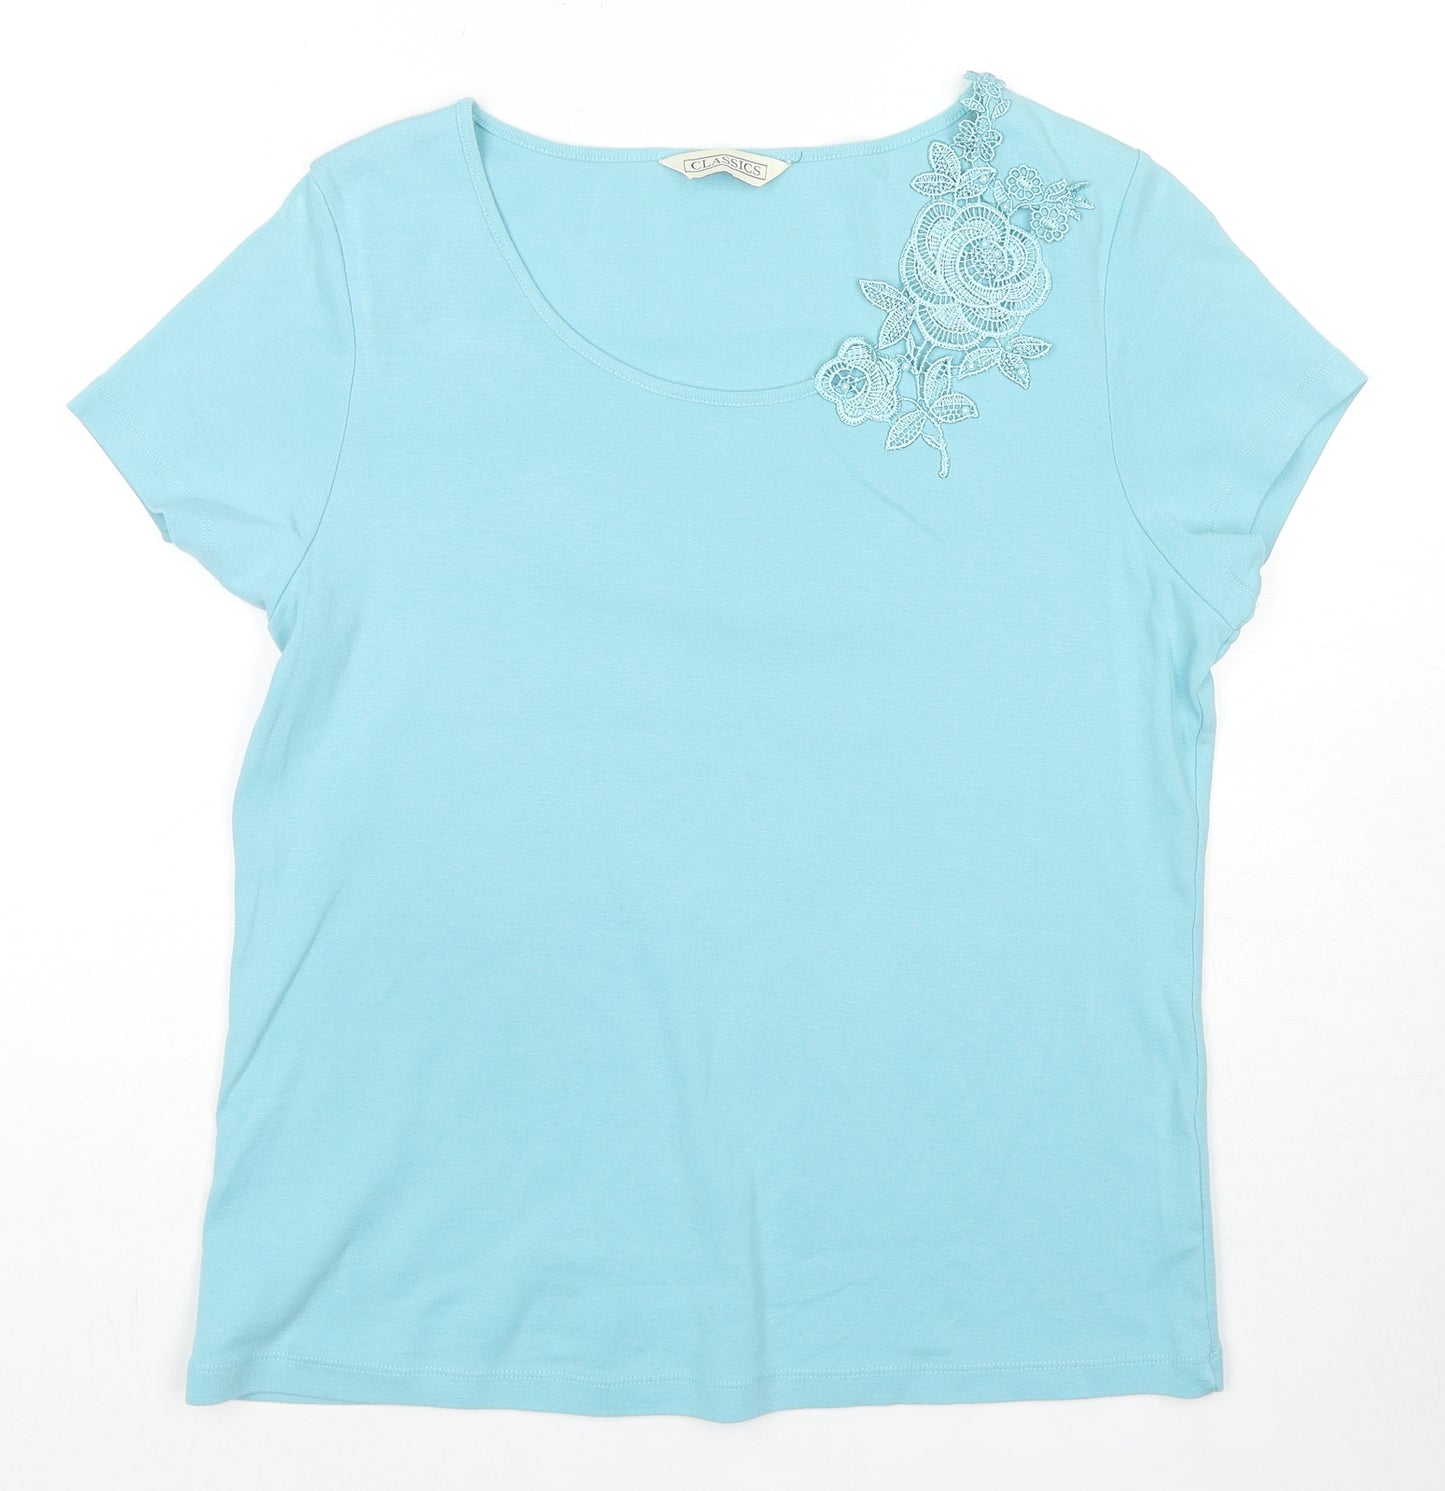 Classics Womens Blue Cotton Basic T-Shirt Size 16 Scoop Neck - Floral Lace Detail